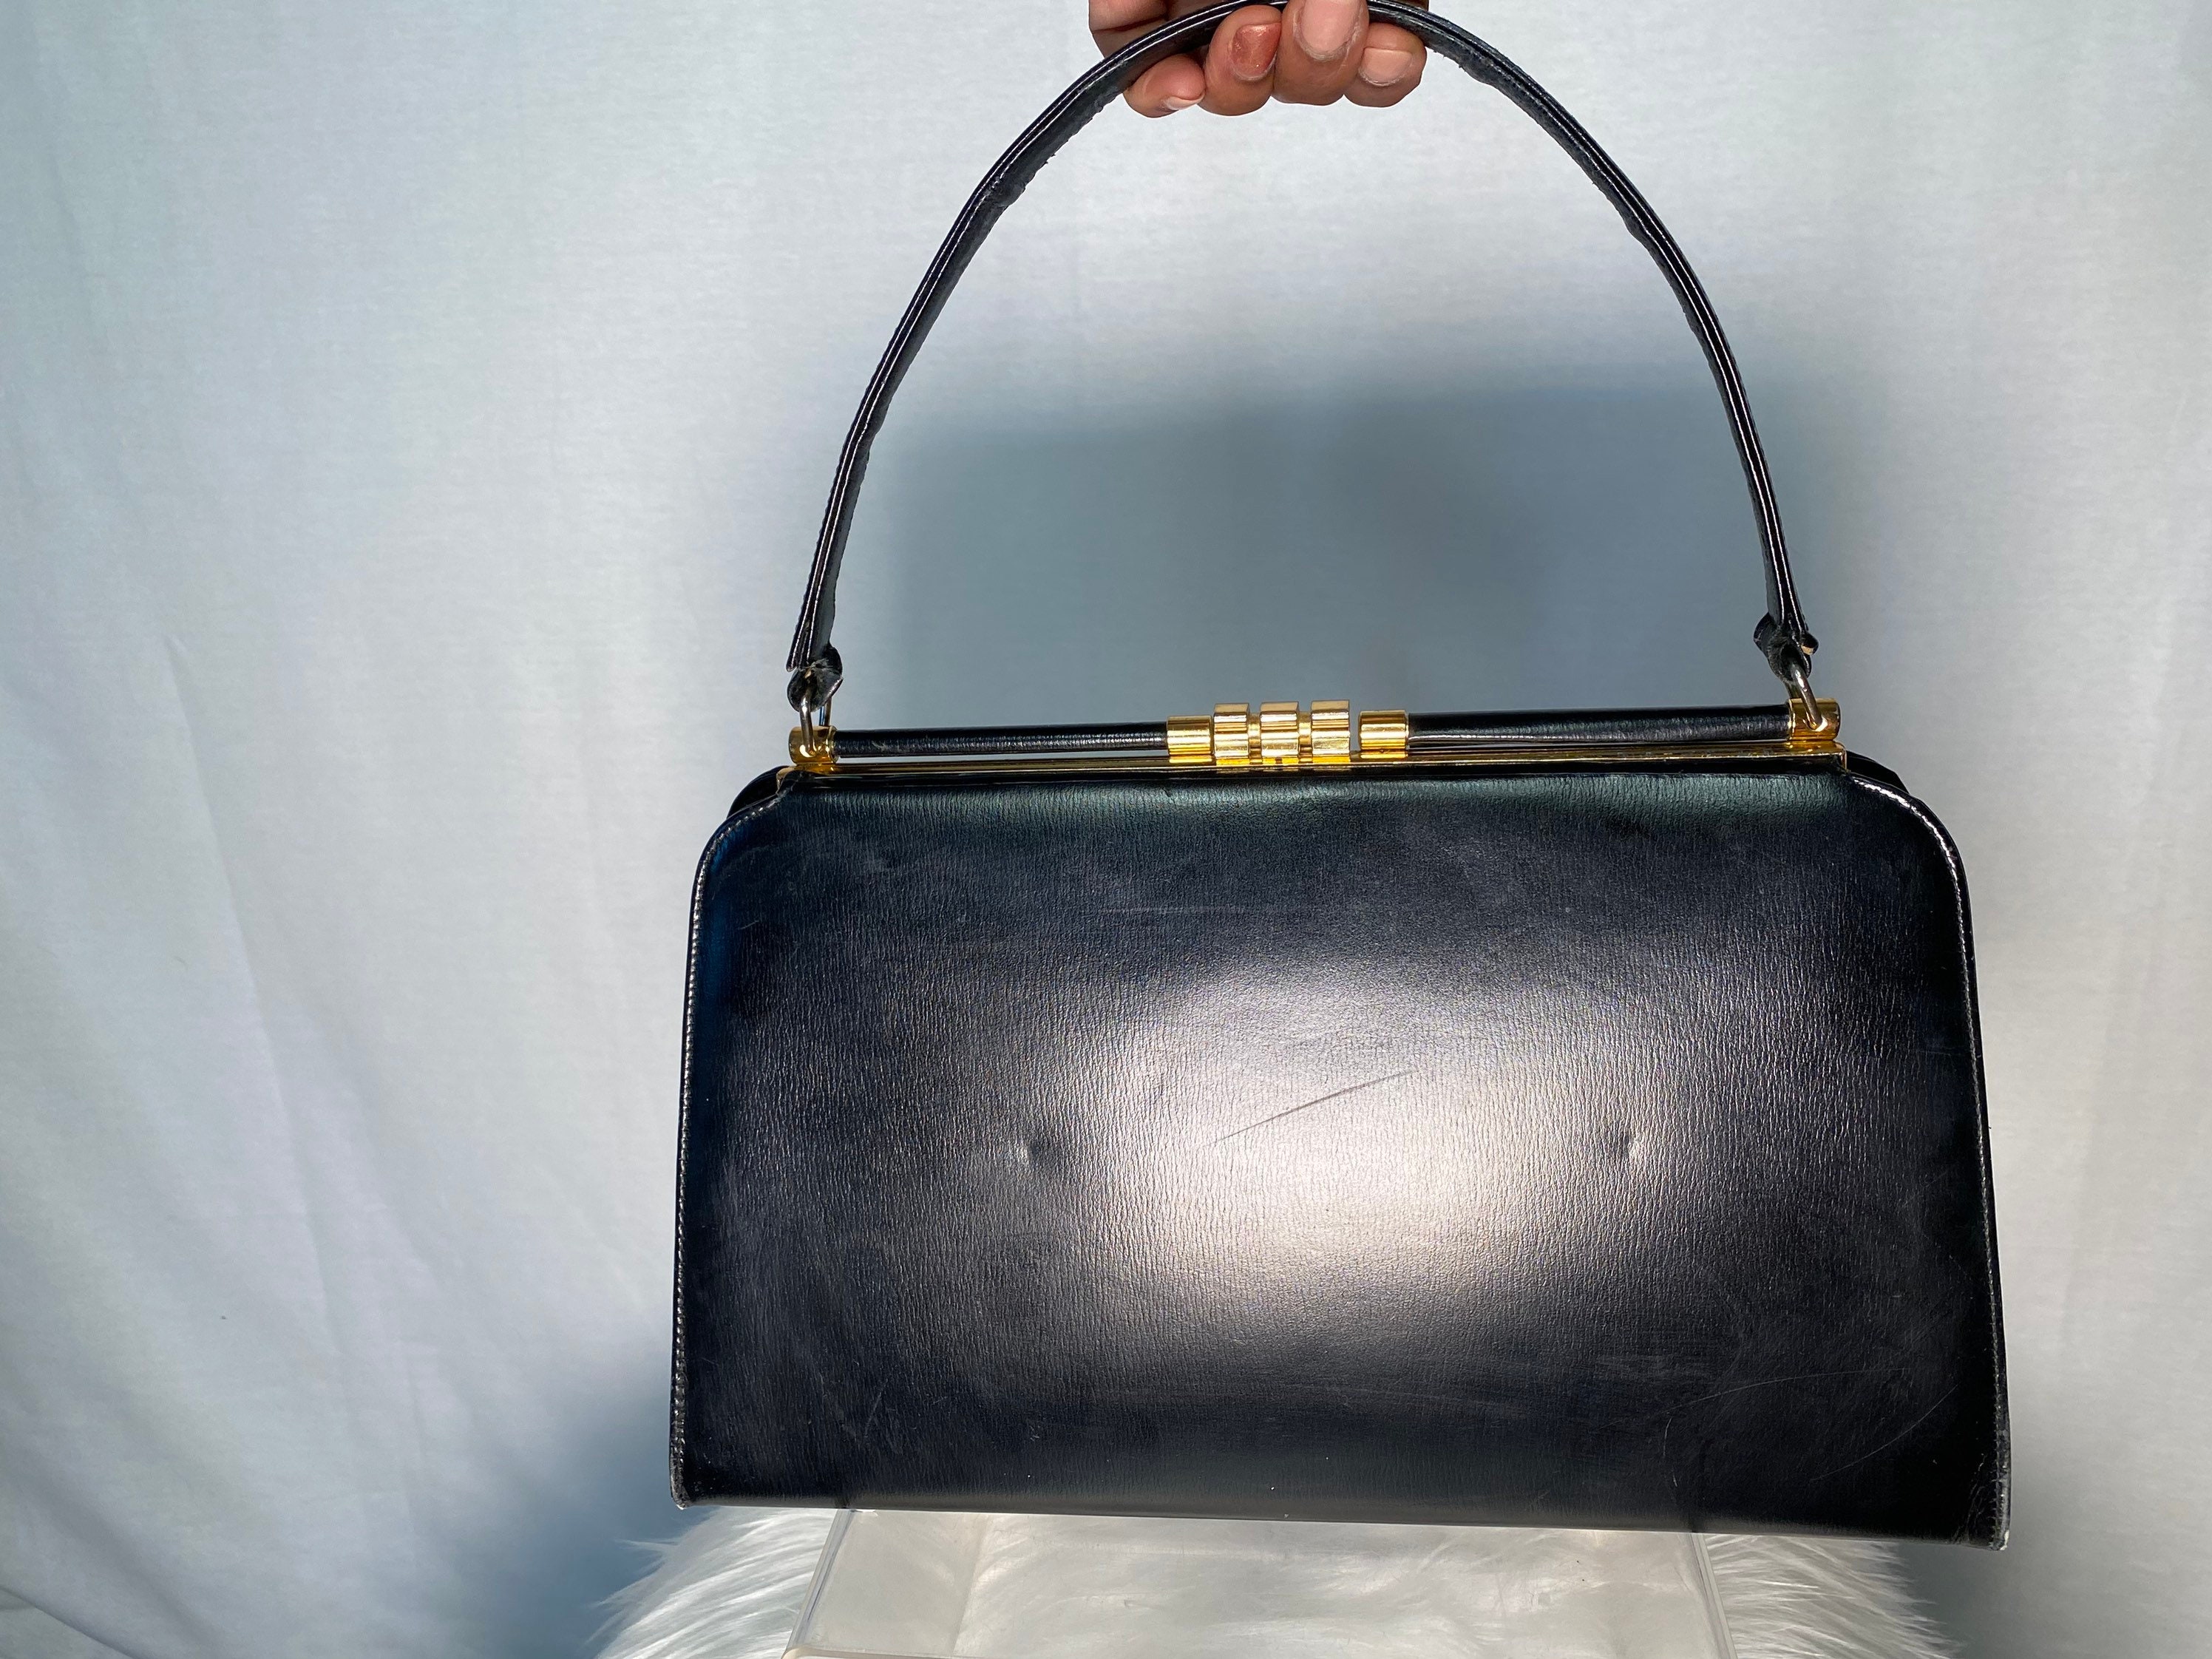 LOUIS CARDY Women's Shoulder Bag/Purse Black/Gold